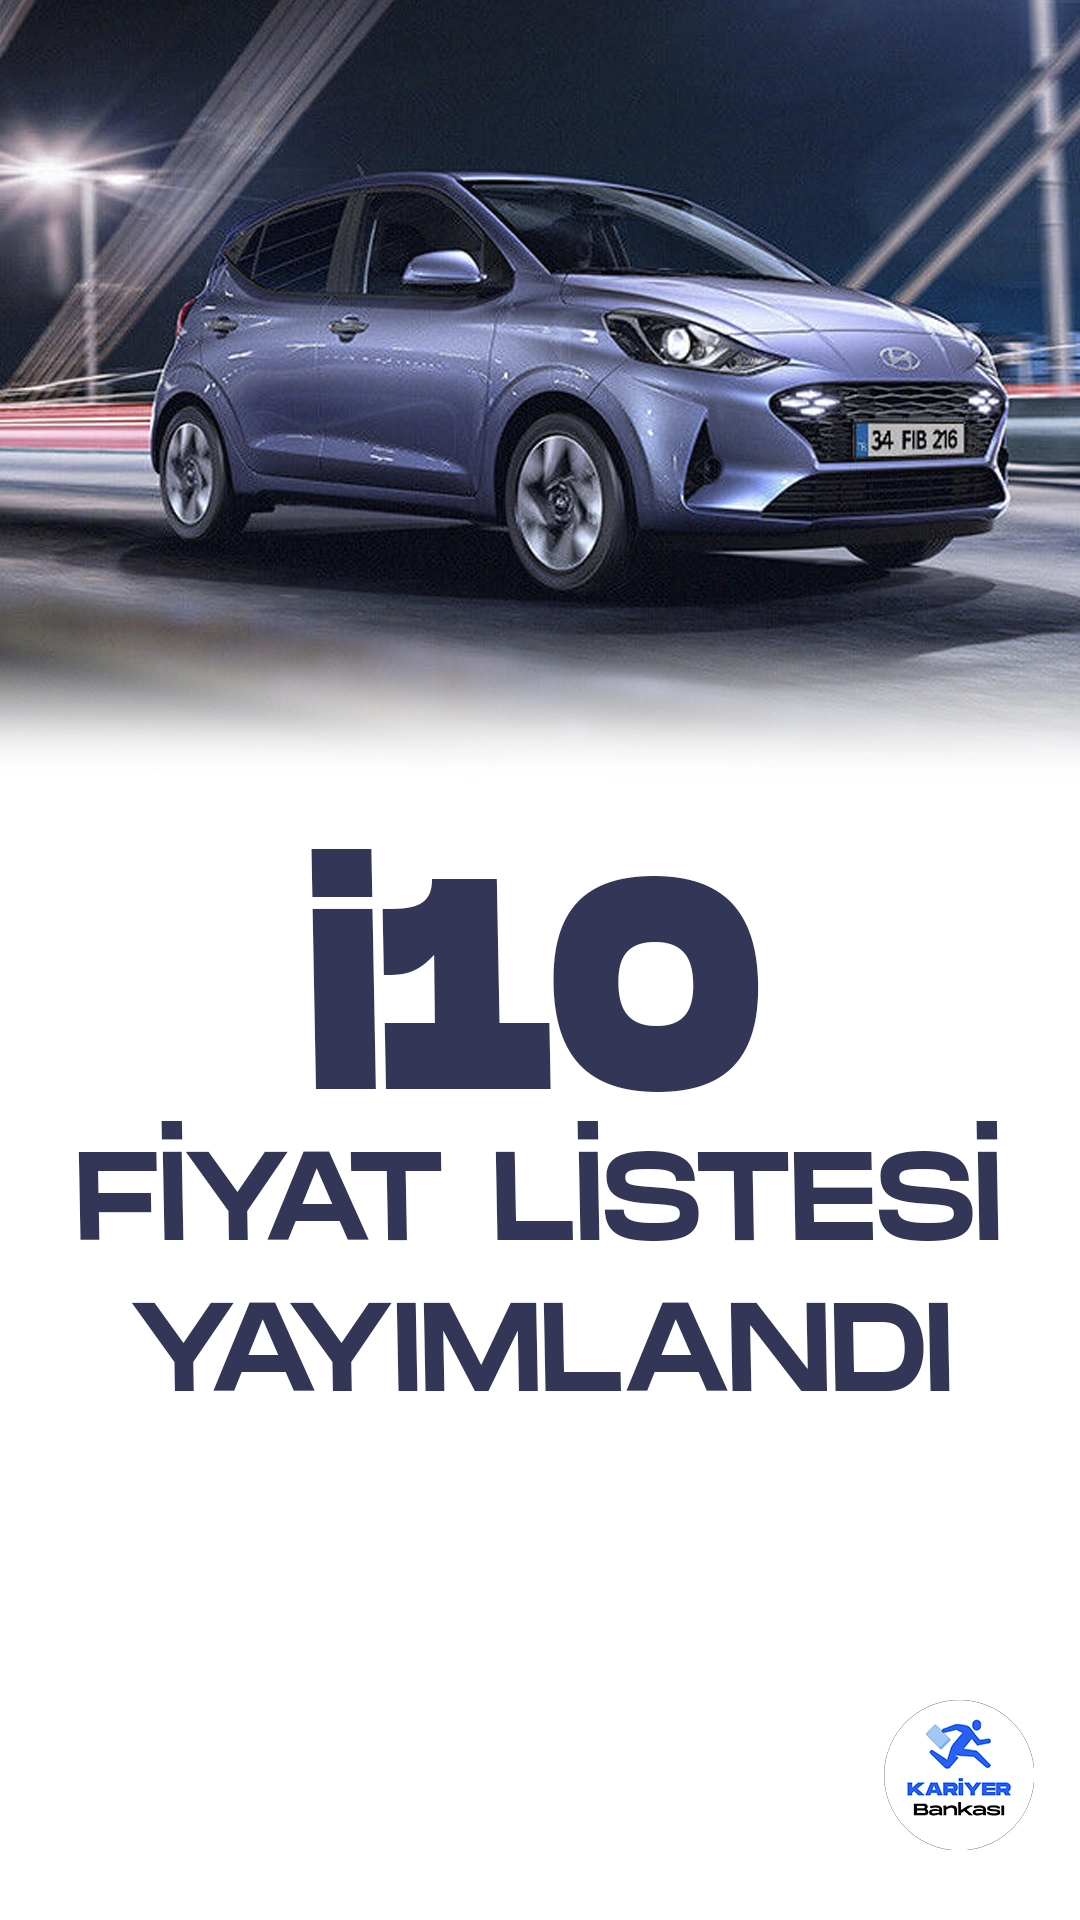 Hyundai i10 Fiyat Listesi Yayımlandı!Hyundai, kompakt sınıftaki iddialı modeli i10'u yenileyerek otomobilseverlerin karşısına çıkıyor. Yeni Hyundai i10, şık tasarımı ve gelişmiş teknolojik özellikleriyle dikkat çekiyor. Yeniden tasarlanan ön ızgara ve farlar, aracın modern ve dinamik bir görünüme sahip olmasını sağlıyor.